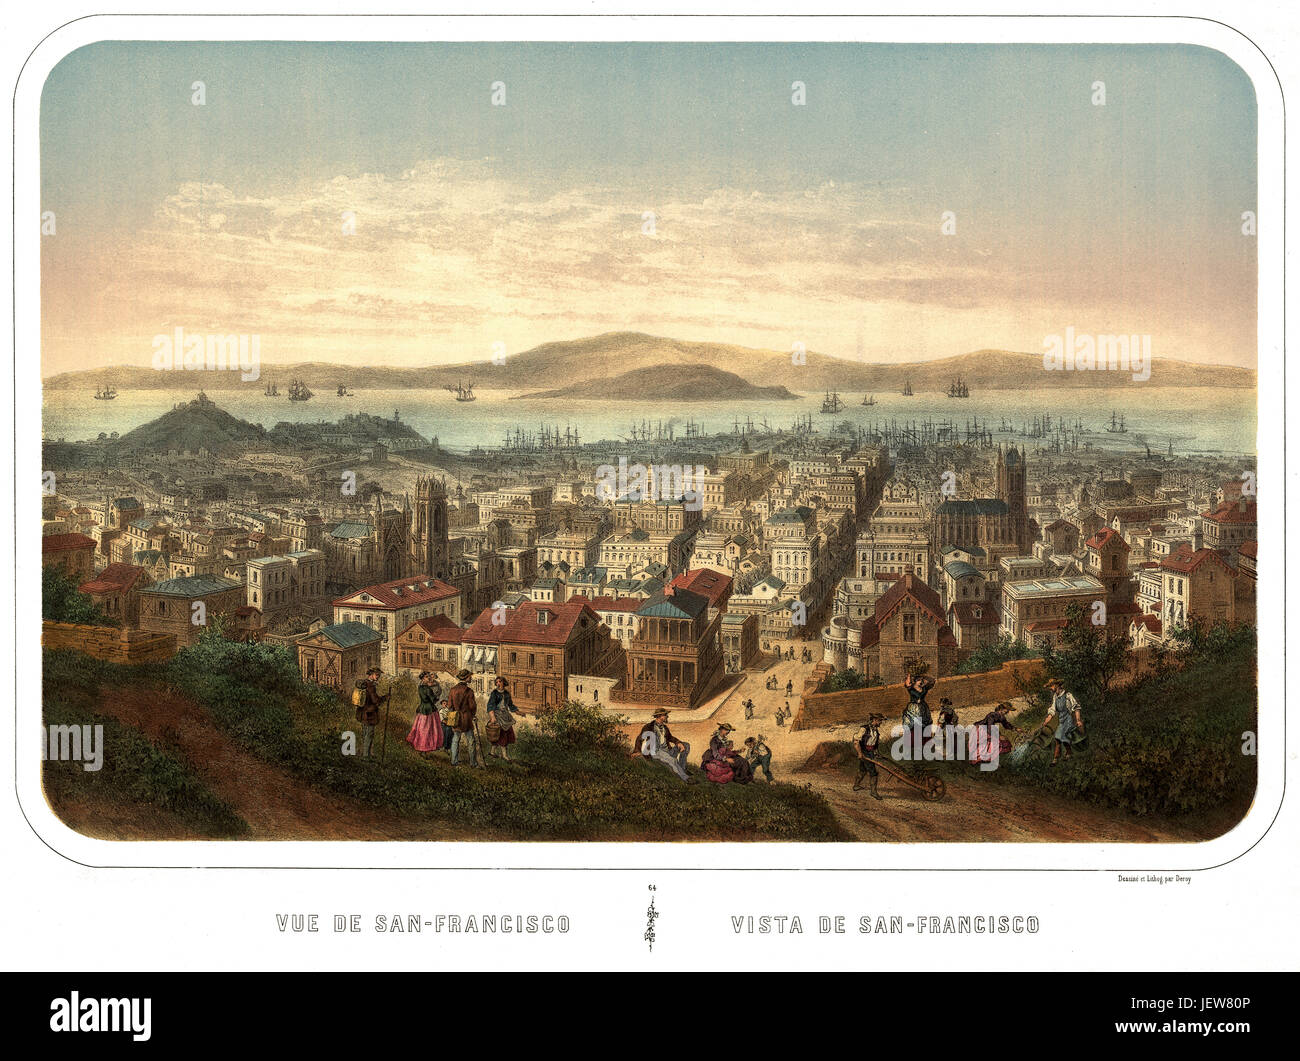 Alte Vogel-Auge Ansicht von San Francisco, Kalifornien.  Erstellt und veröffentlicht von Isador Laurent Deroy, Paris, 1860 Stockfoto